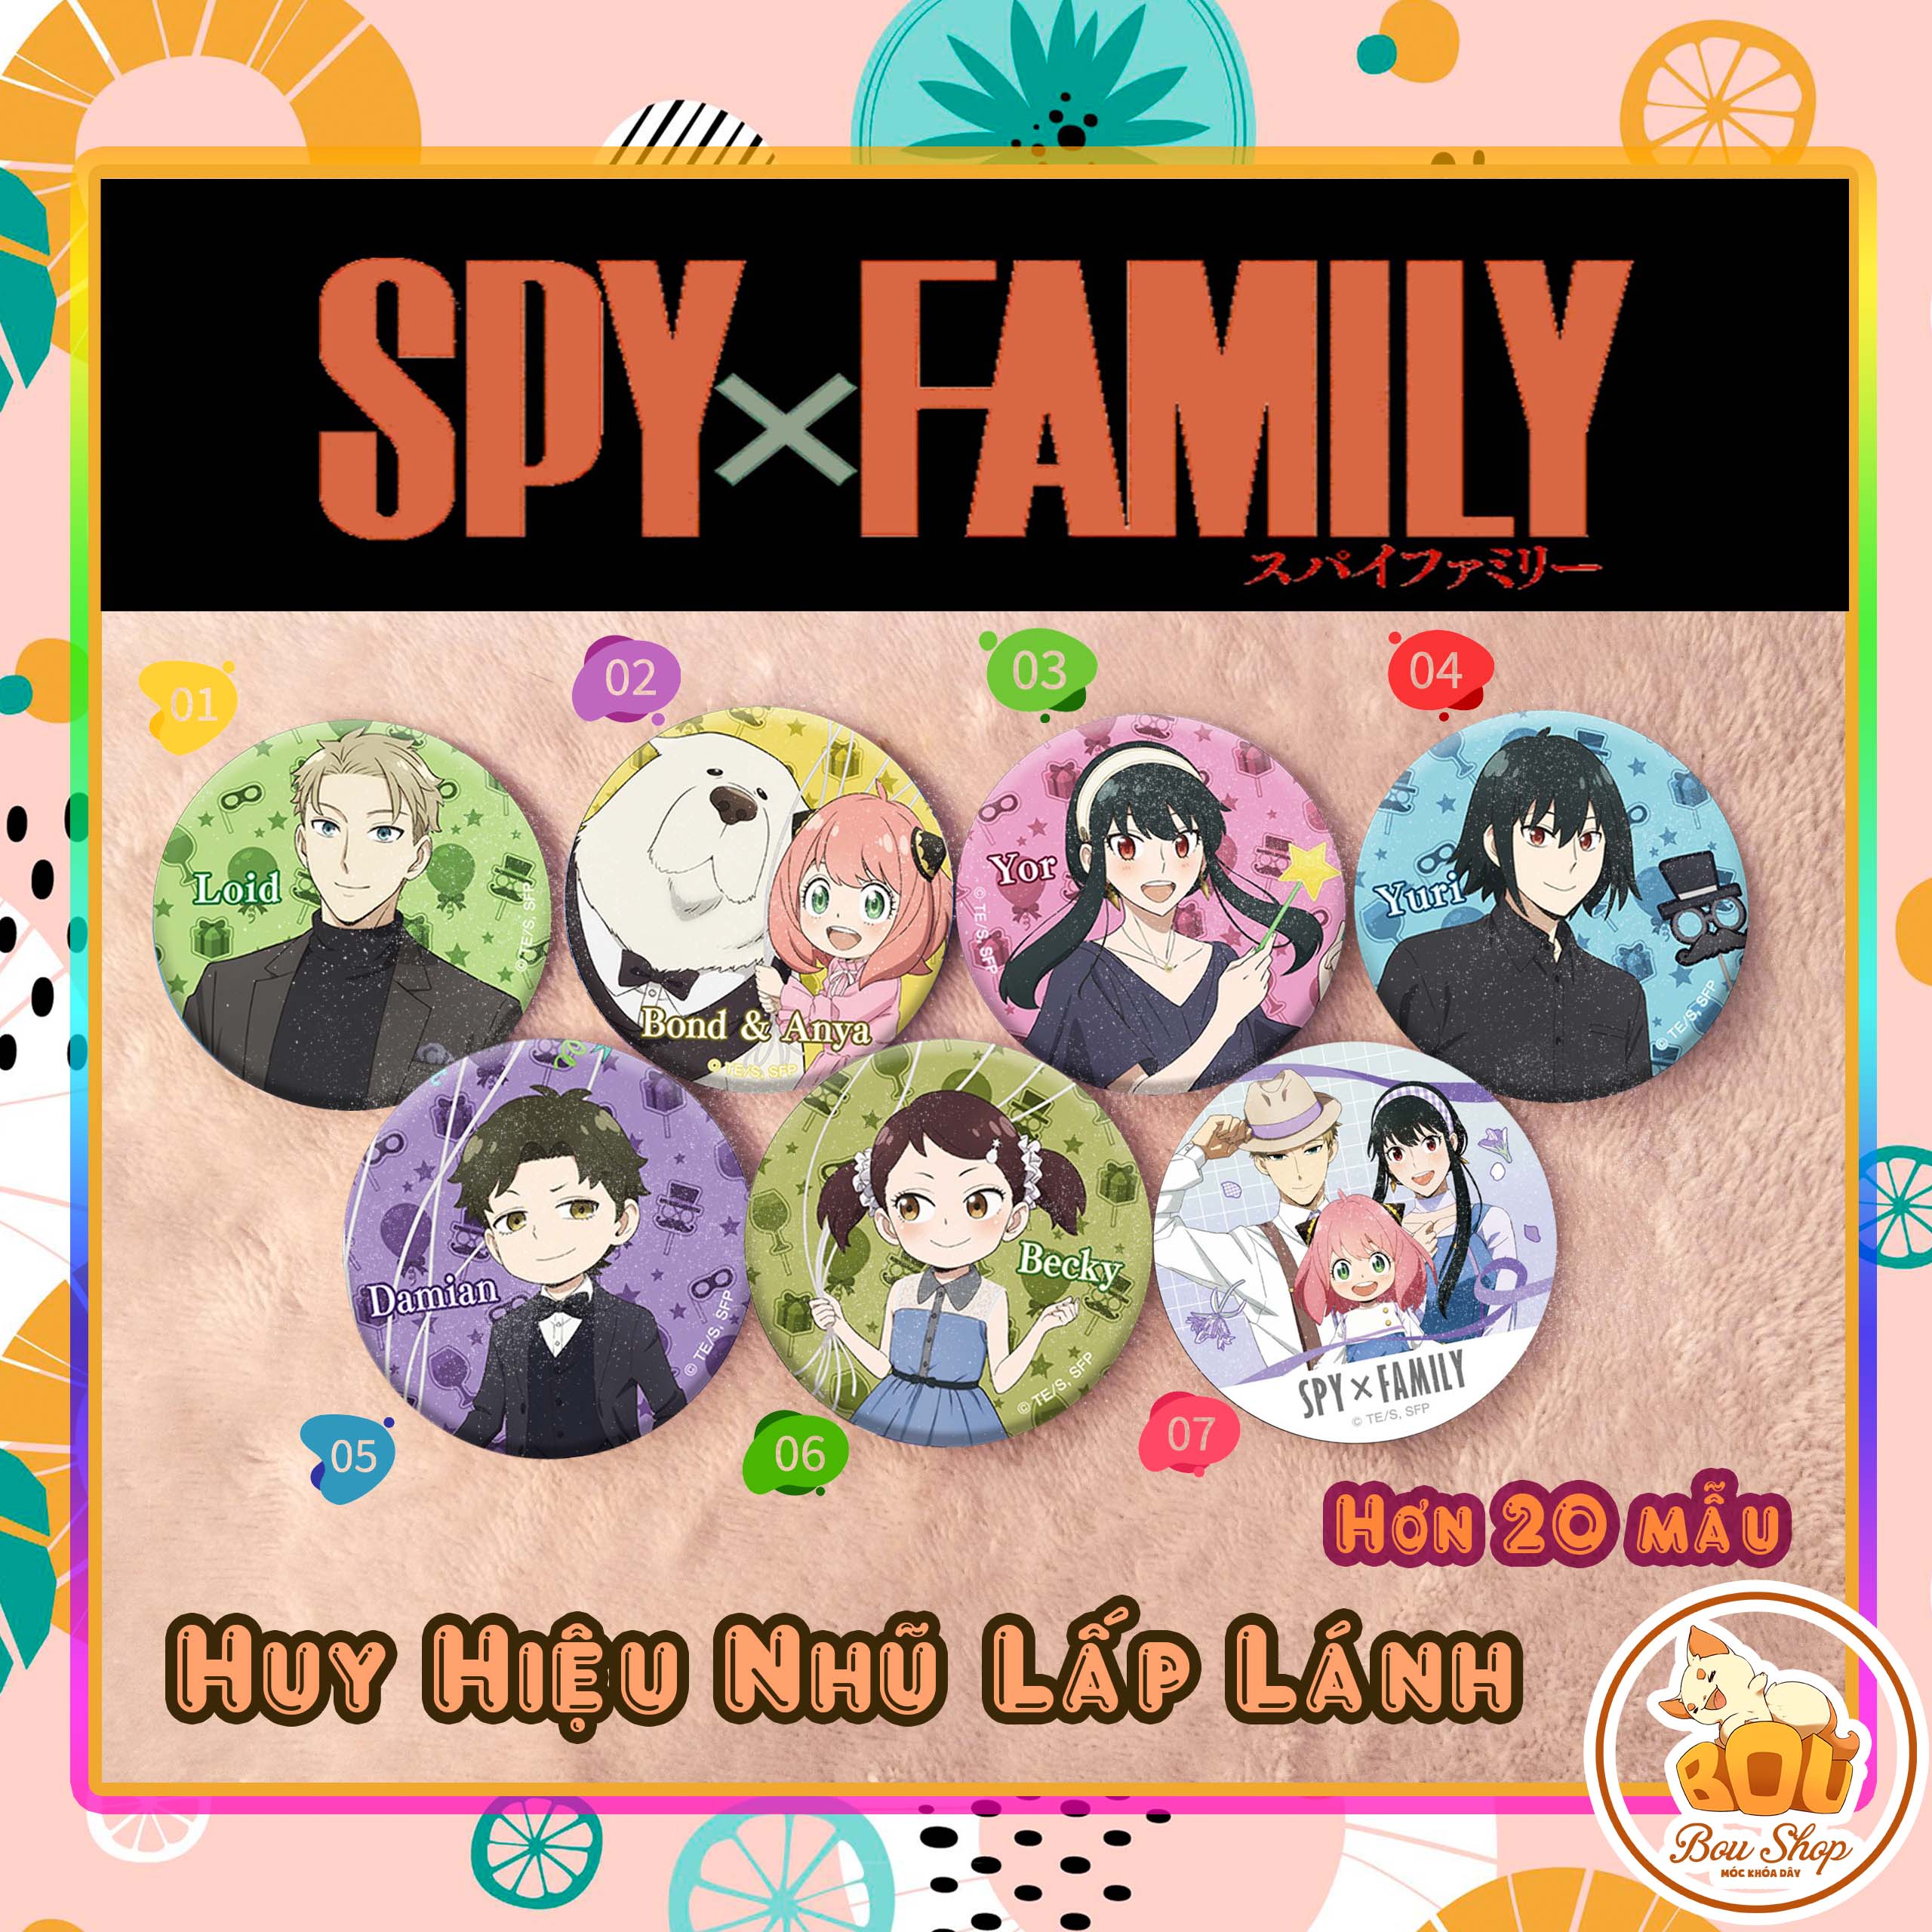 Huy hiệu nhũ lấp lánh Spy X Family - Gia đình diệp viên Anime theo yêu cầu